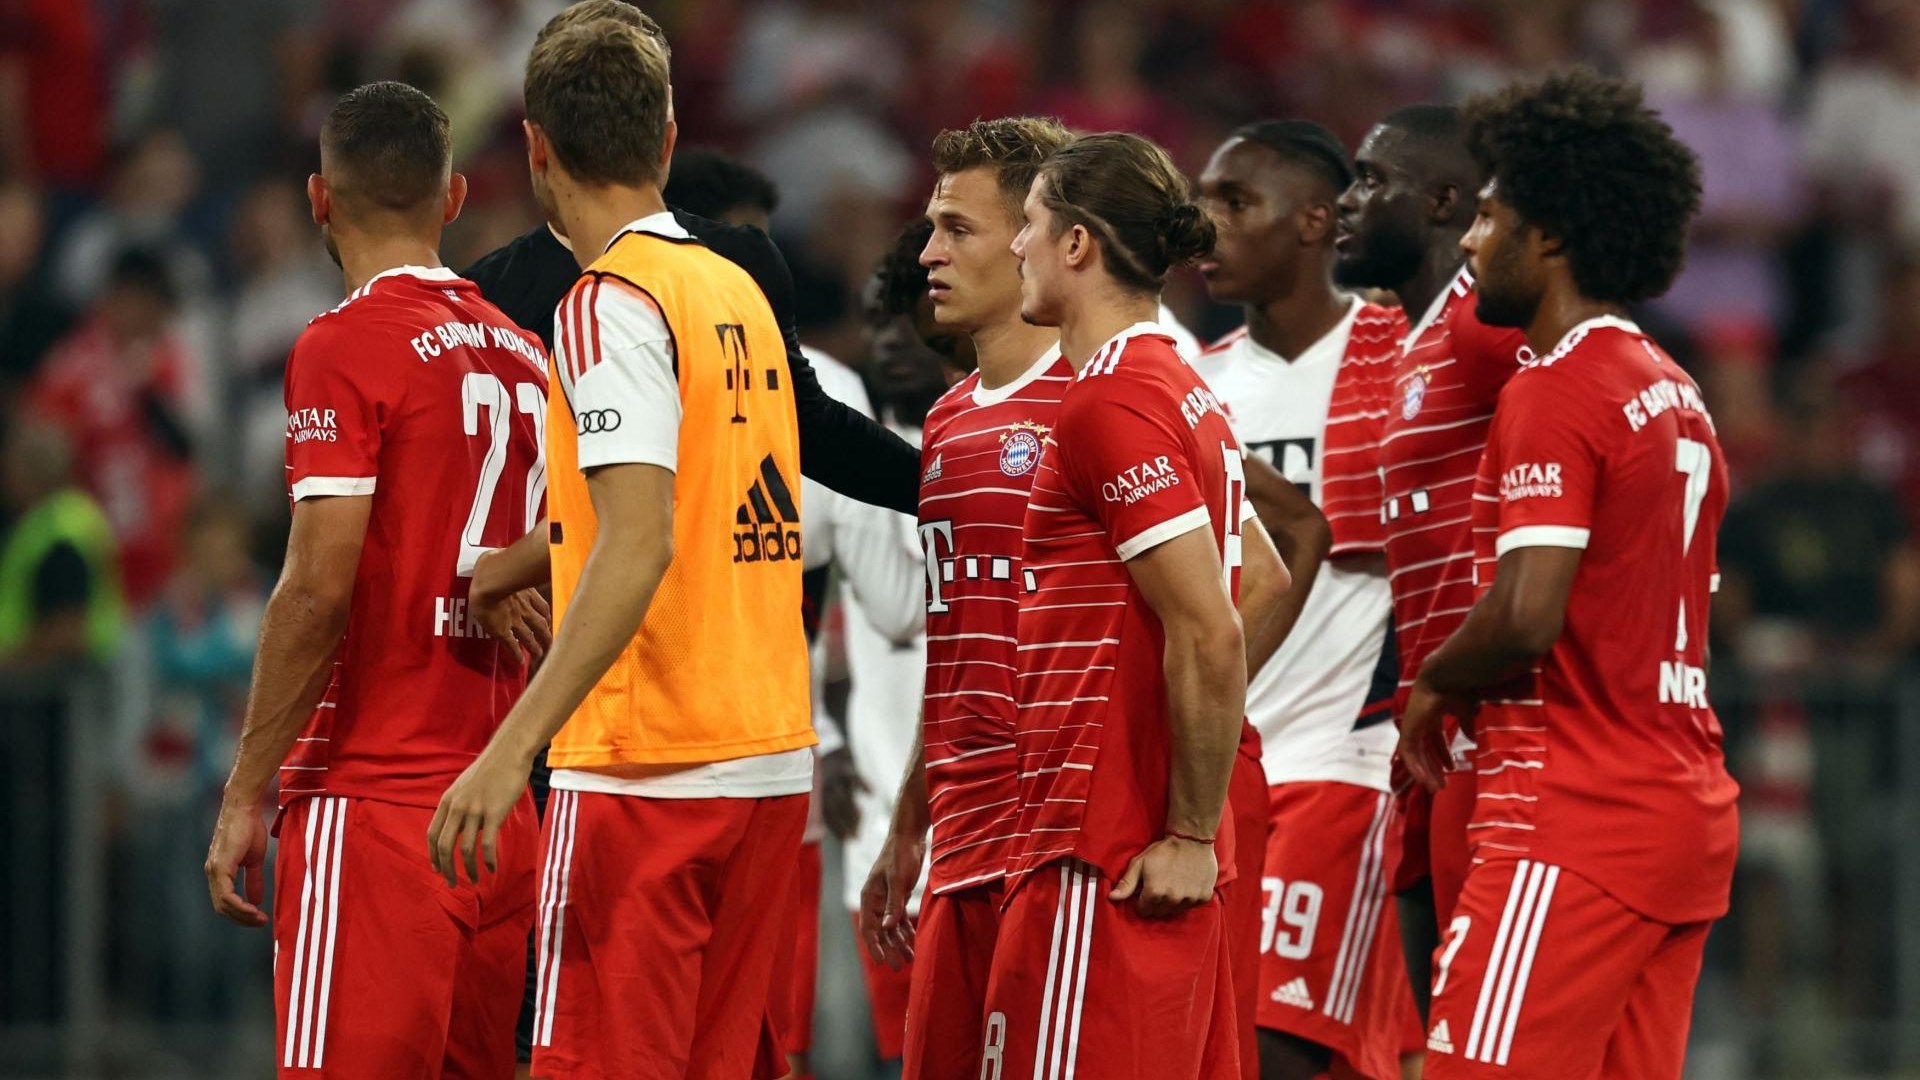 Der FC Bayern verzichtet auf Einnahmen aus dem Pokalspiel